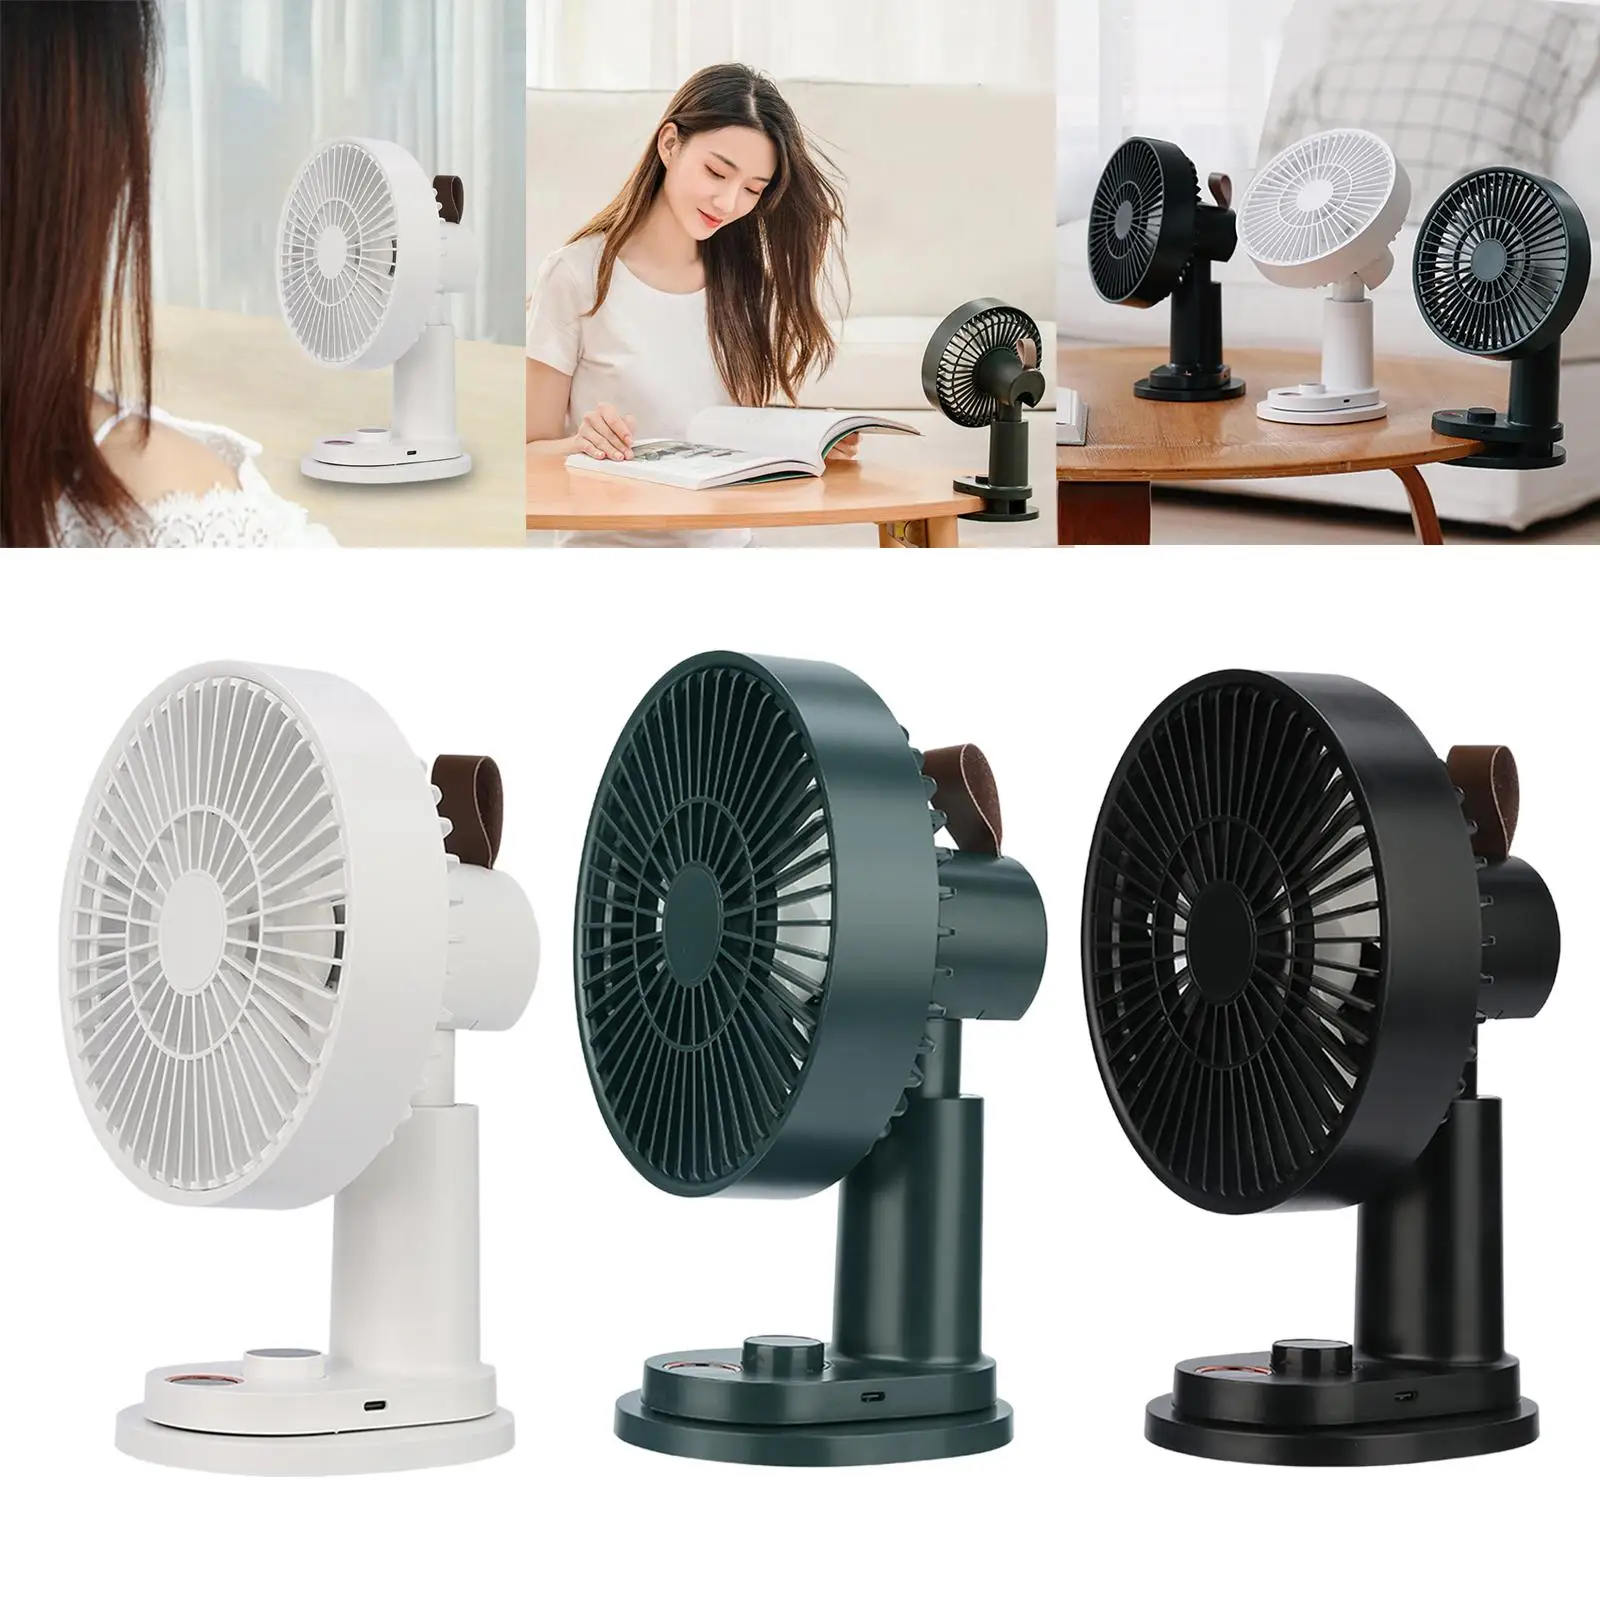 Mini Desk Fan Personal Fan Clip Fan Adjustable Speed Desktop Cooler Fan Silent for Home Office Travel Beach Crib